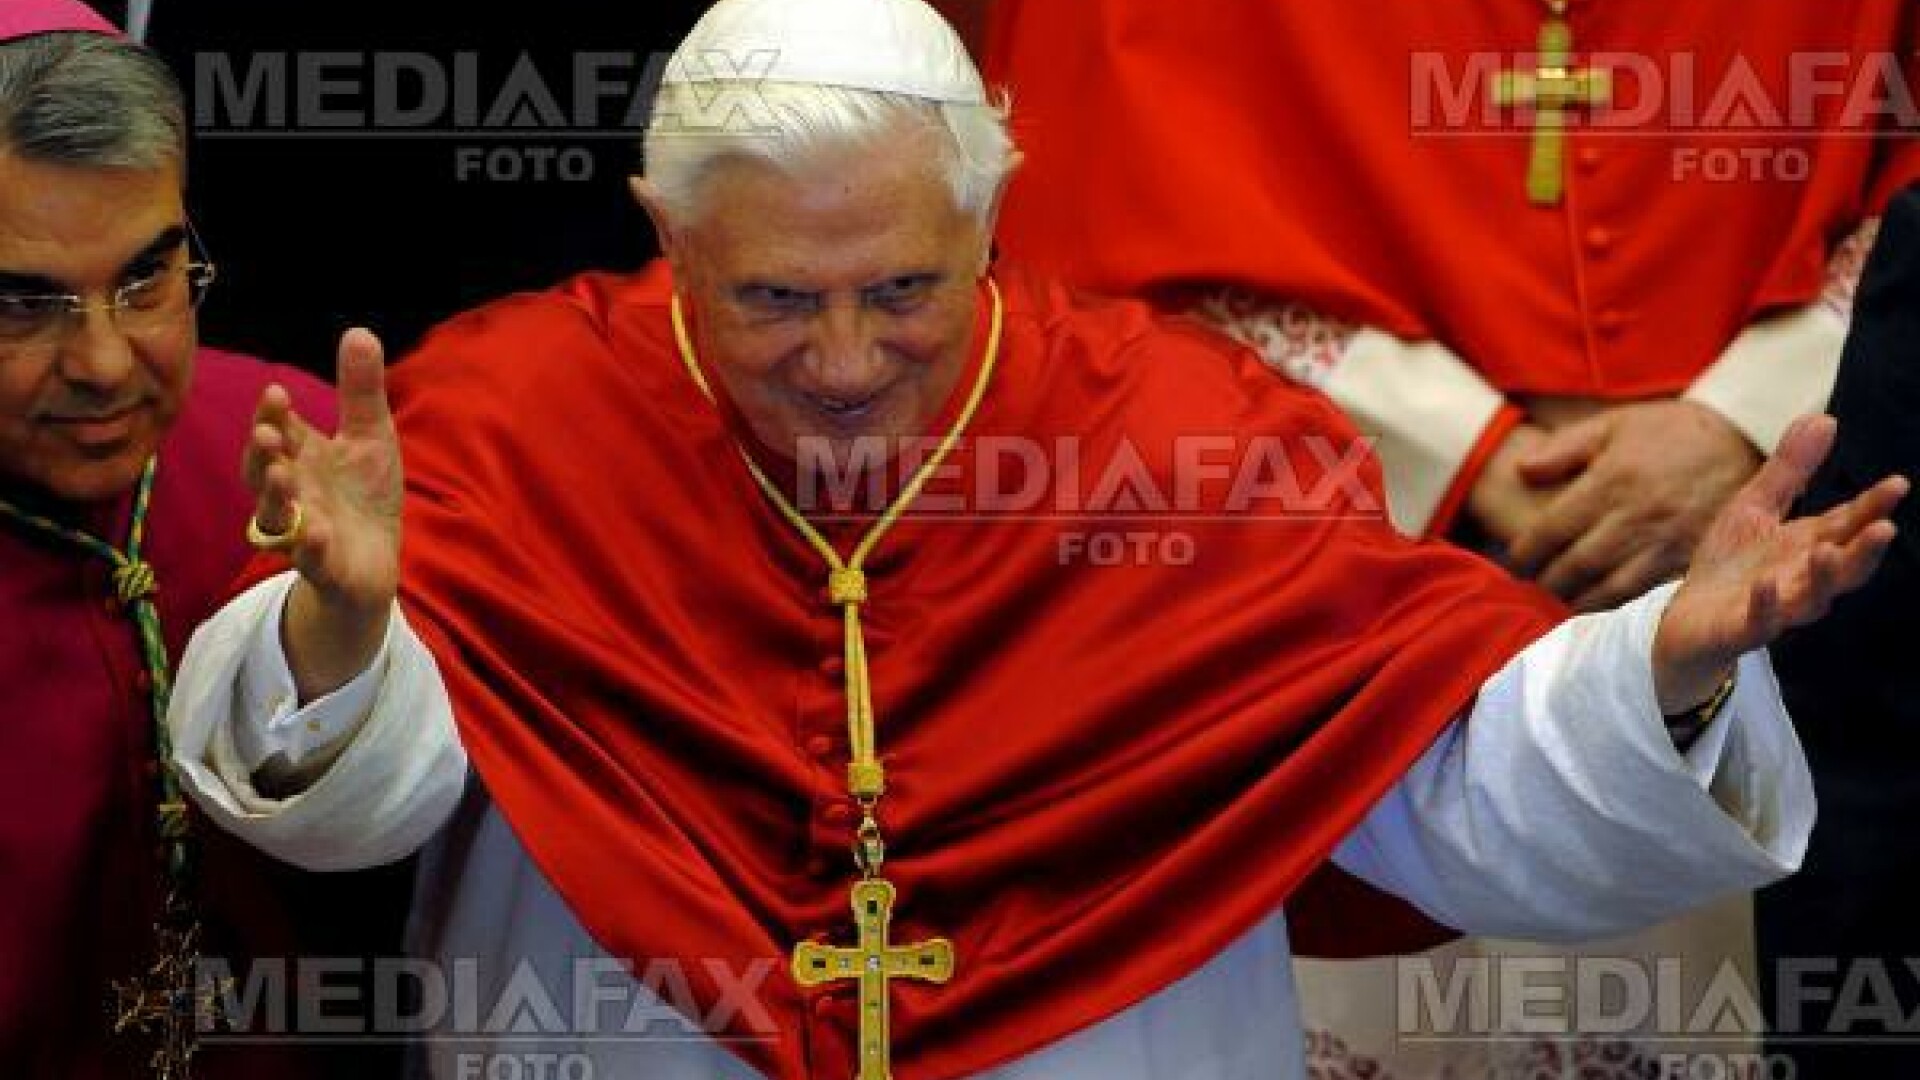 Papa Benedict al XVI-lea, cel mai influent om politic european